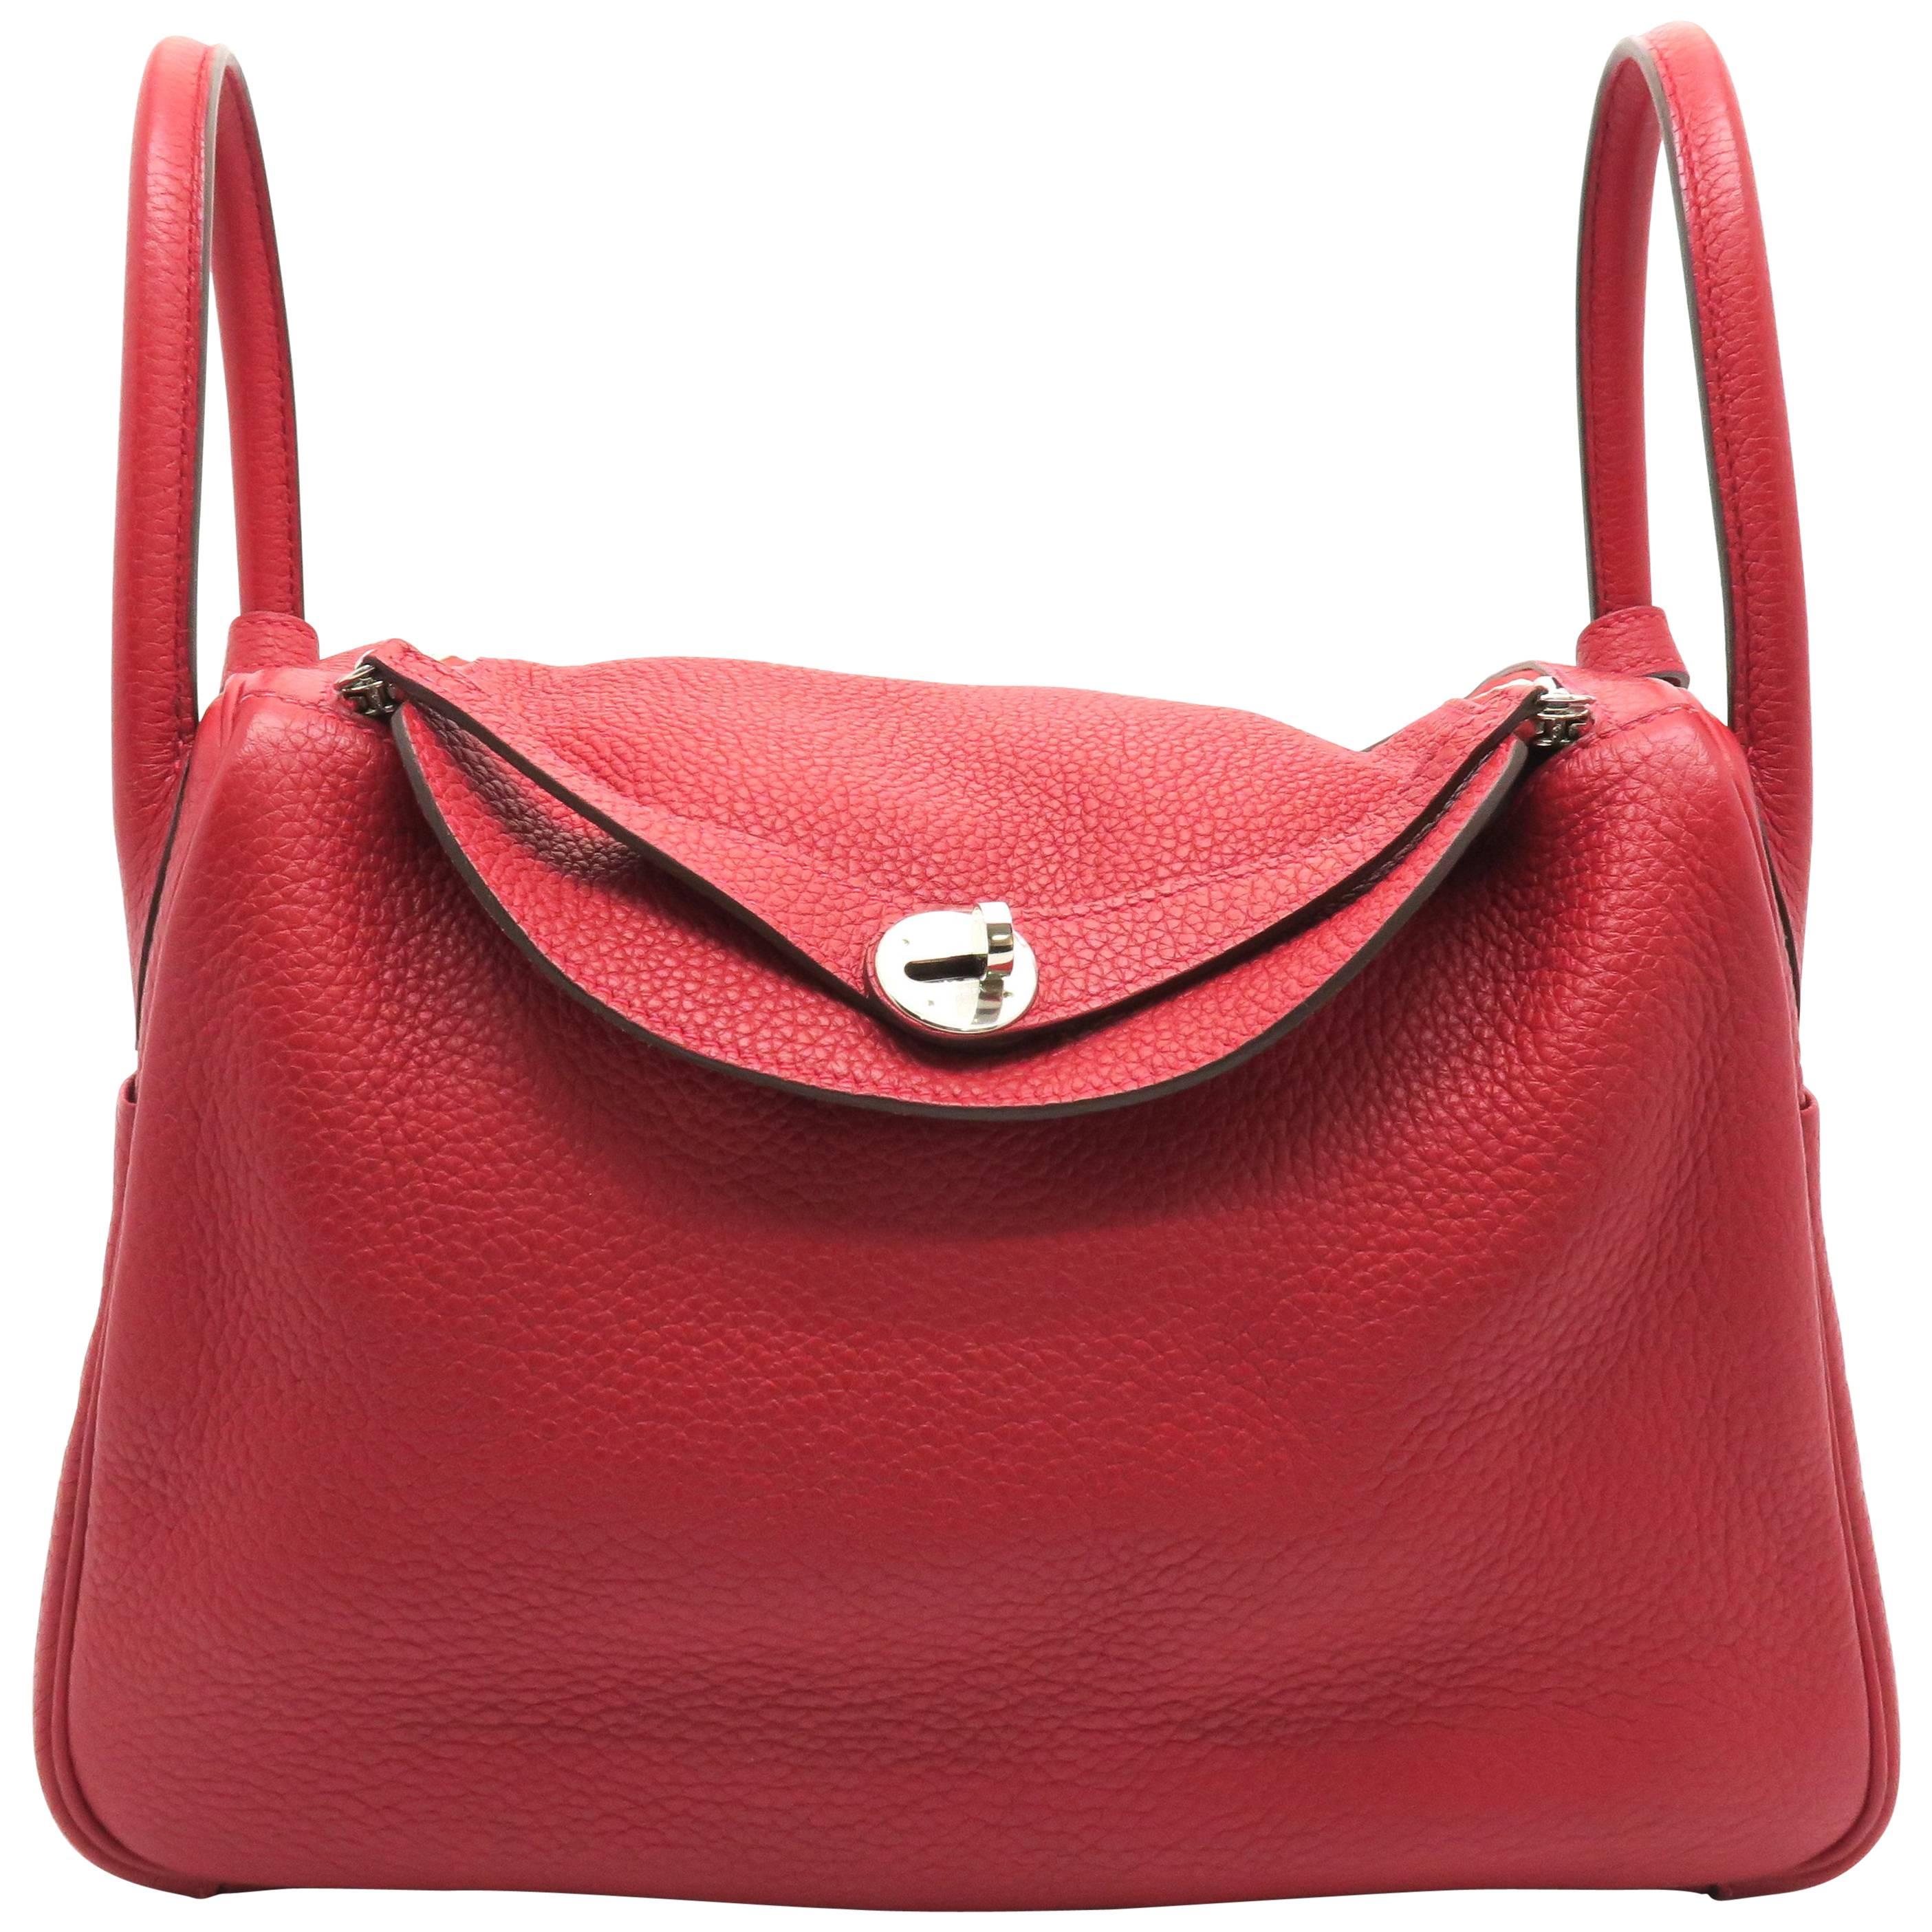 Hermes Lindy 30 Rouge Garance Taurillon Clemence Leather Shoulder Bag